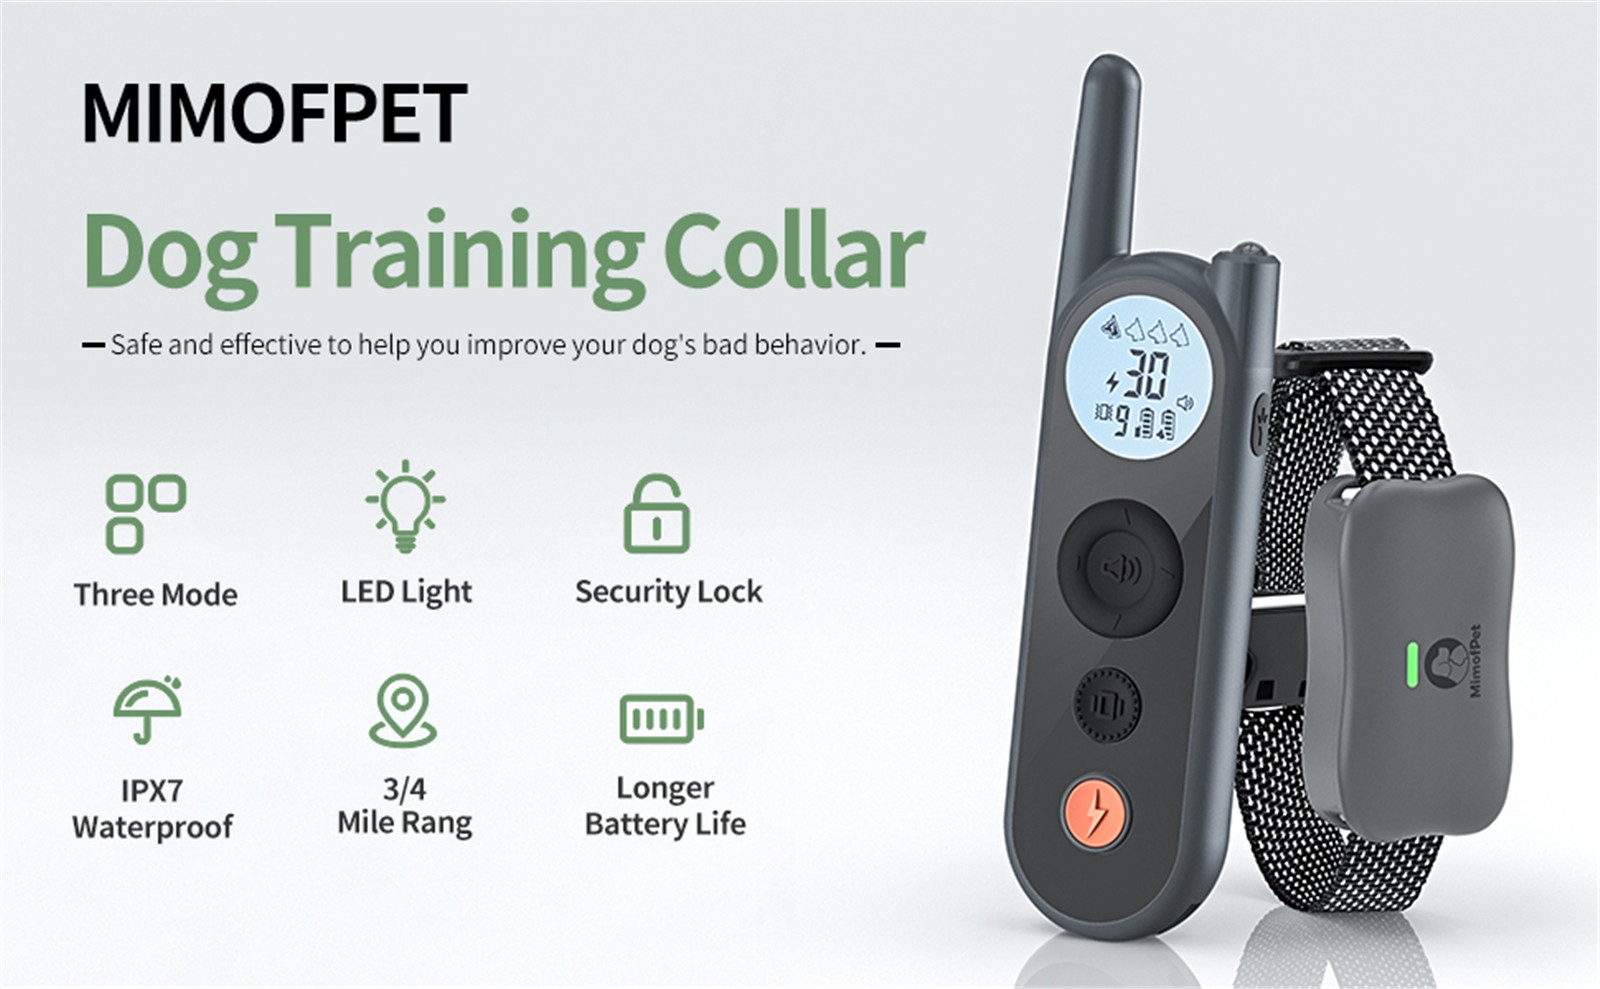 Kynning um Mimofpet X1 Model Dog Training Collar 01 (2)